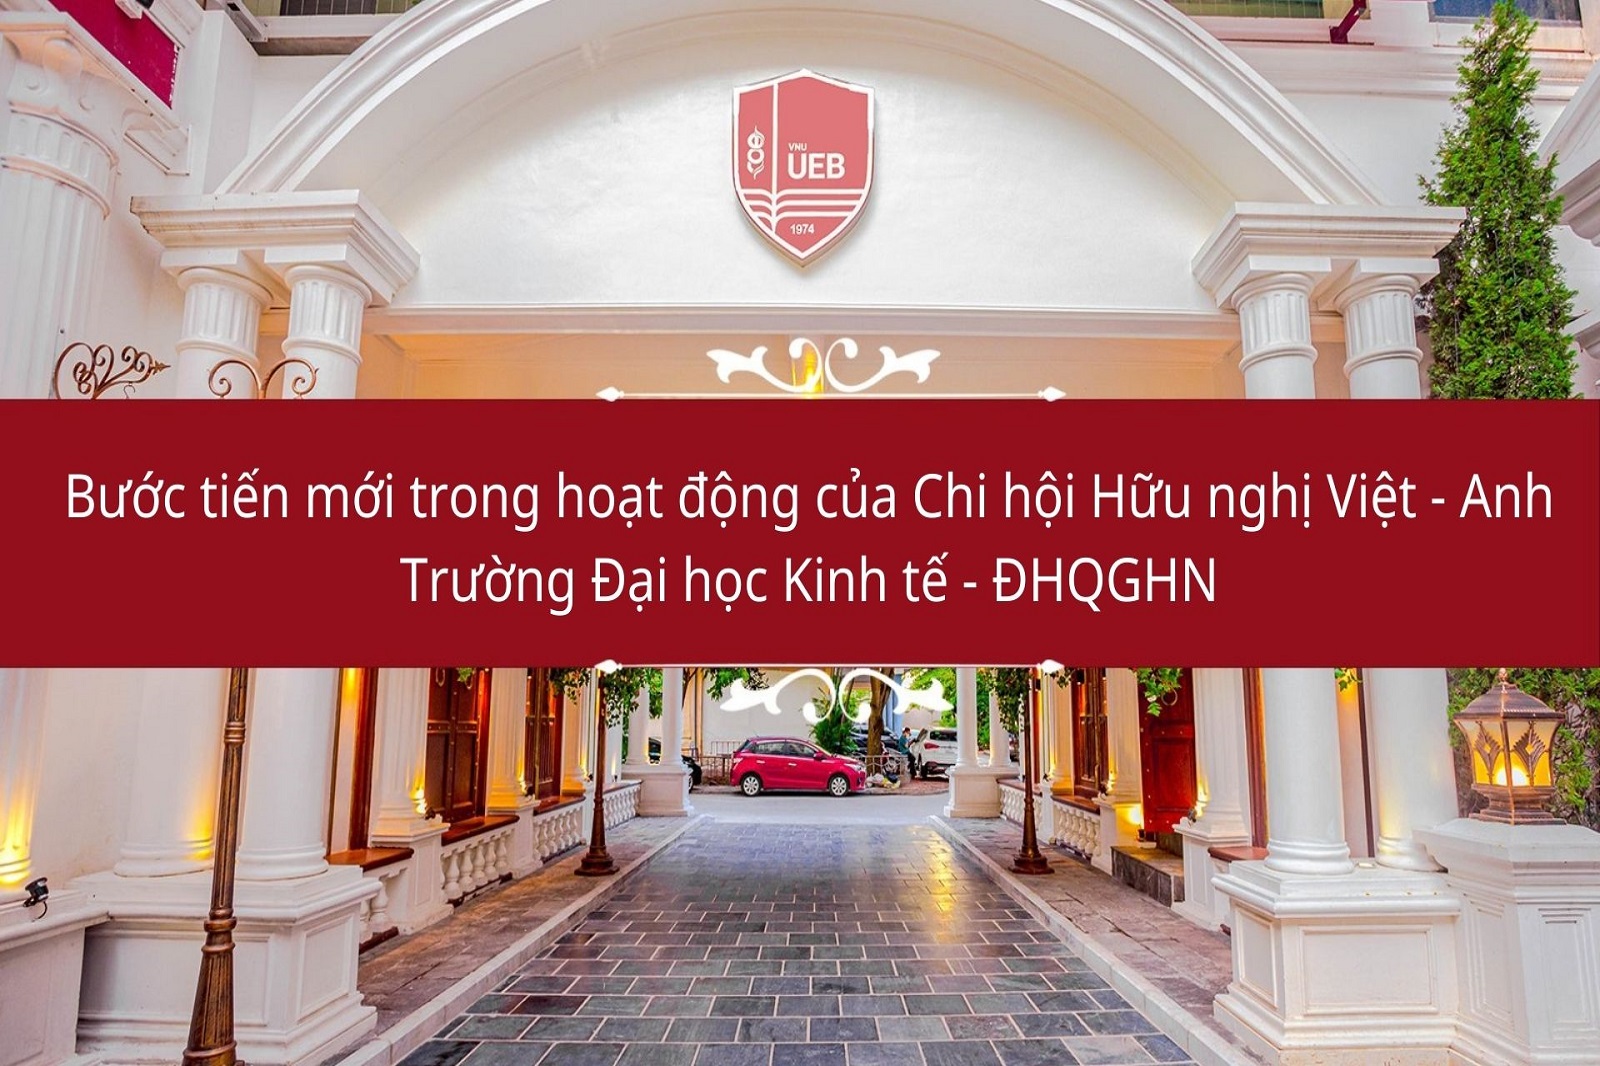 Bước tiến mới trong hoạt động của Chi hội Hữu nghị Việt - Anh Trường Đại học Kinh tế - ĐHQGHN 